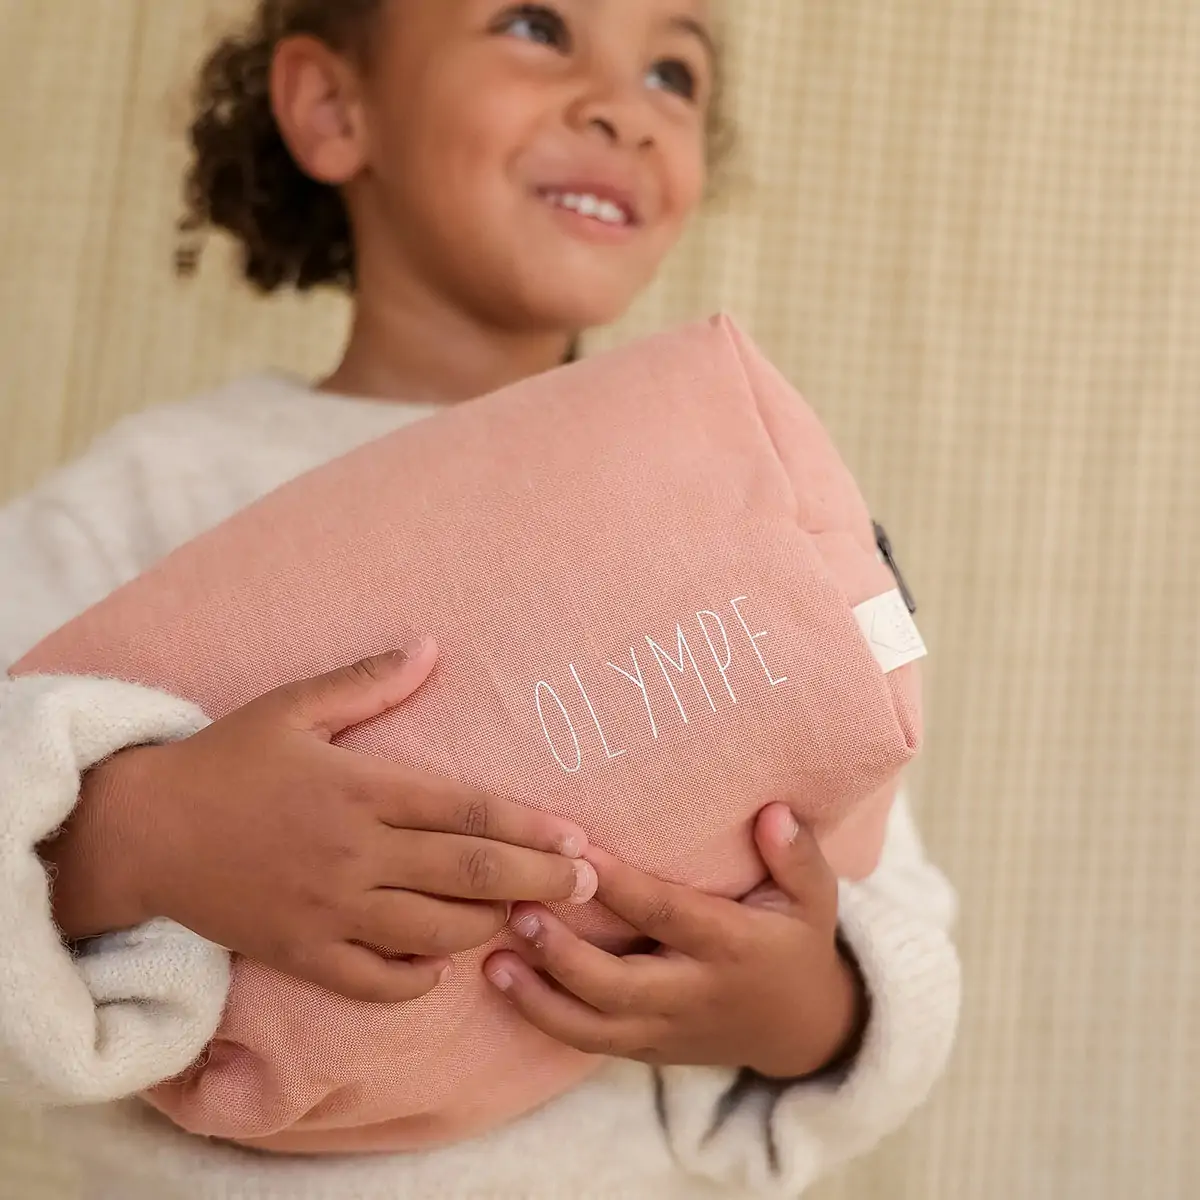 Trousse de toilette enfant Little Dutch personnalisée - Pure pink